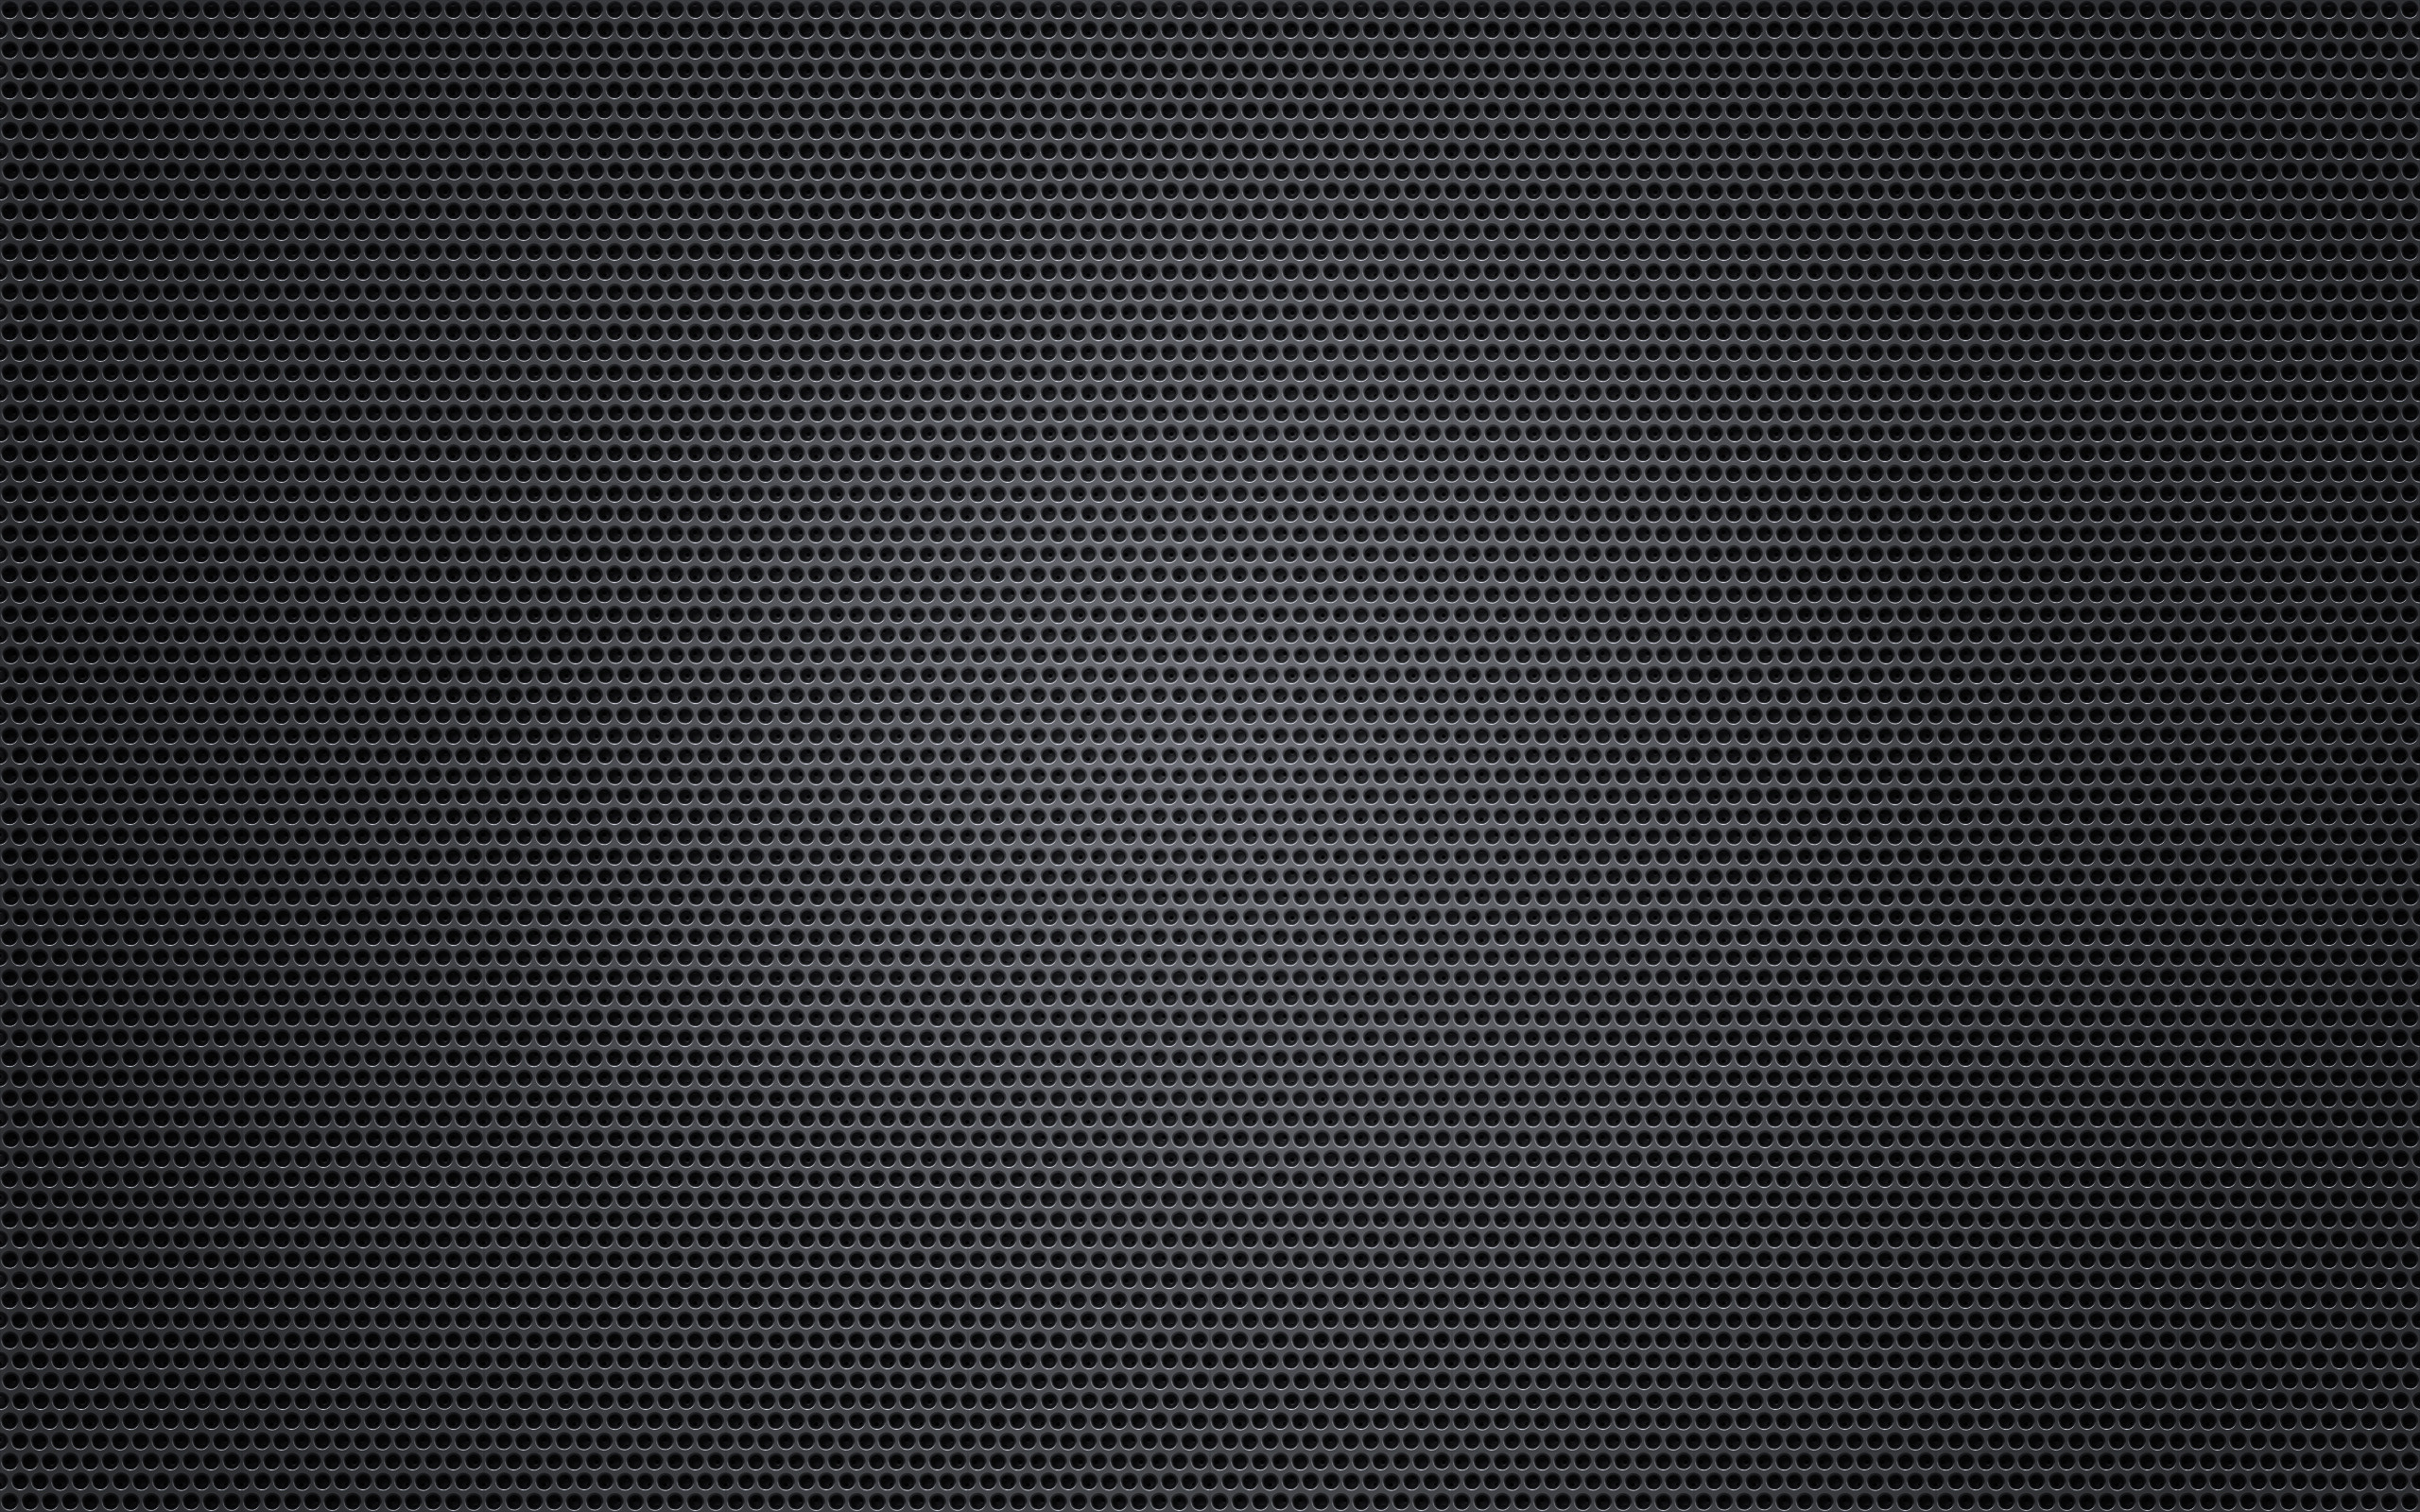 2560x1600 Metal HD Wallpaper | Hintergrund |  | ID:408311 - Wallpaper Abyss